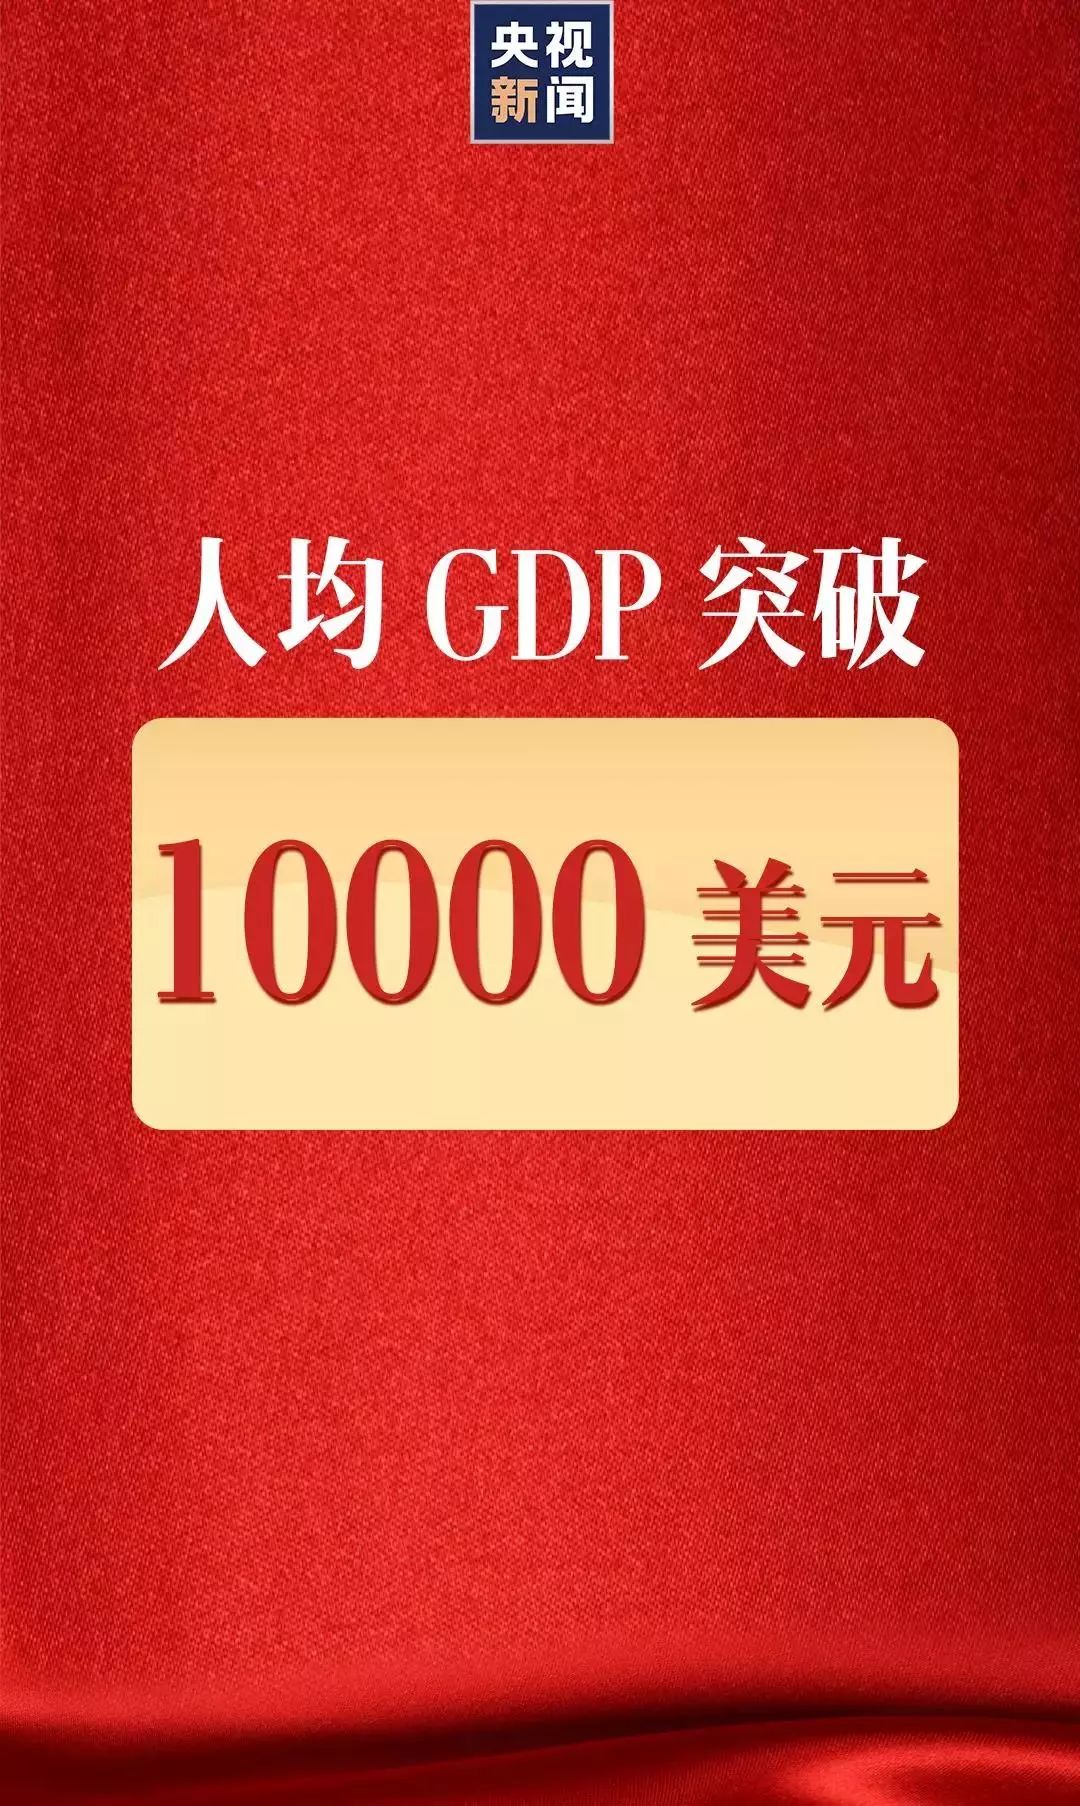 中国人均GDP突破1万美元